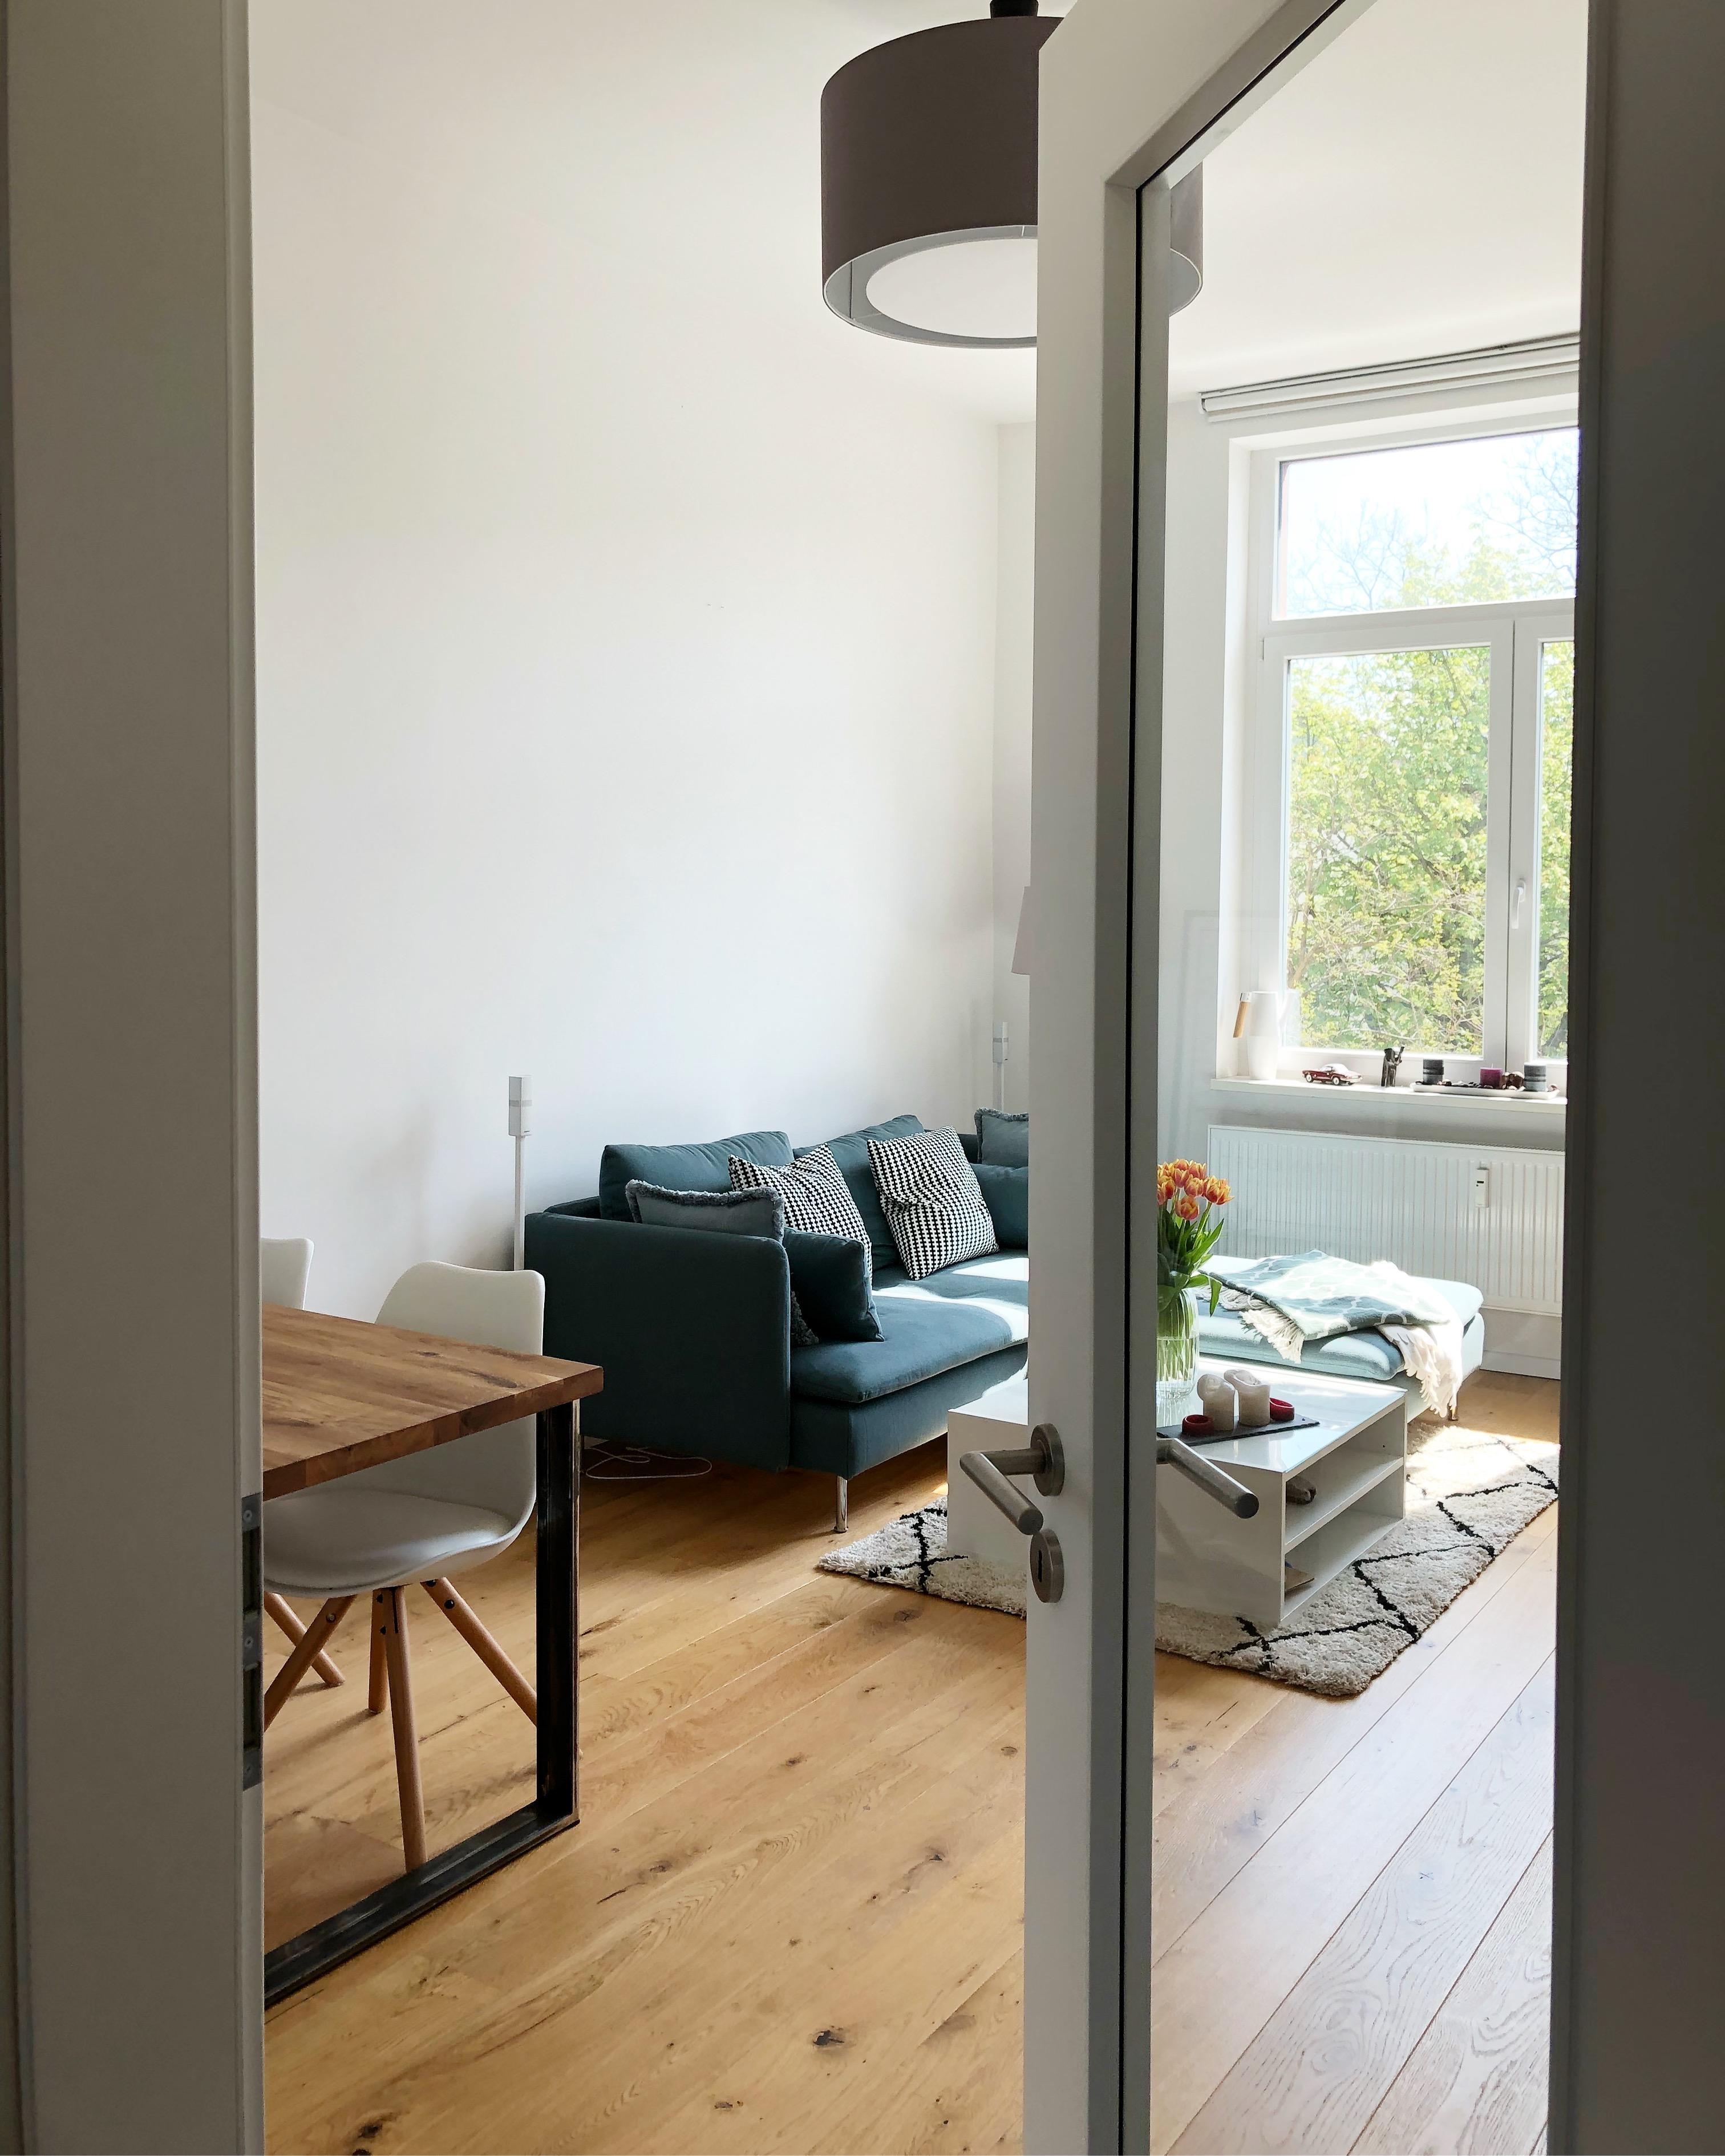 Blick ins Wohnzimmer // #livingroom #textiles #wohnzimmer #skandinavisch #minimalism #whiteliving